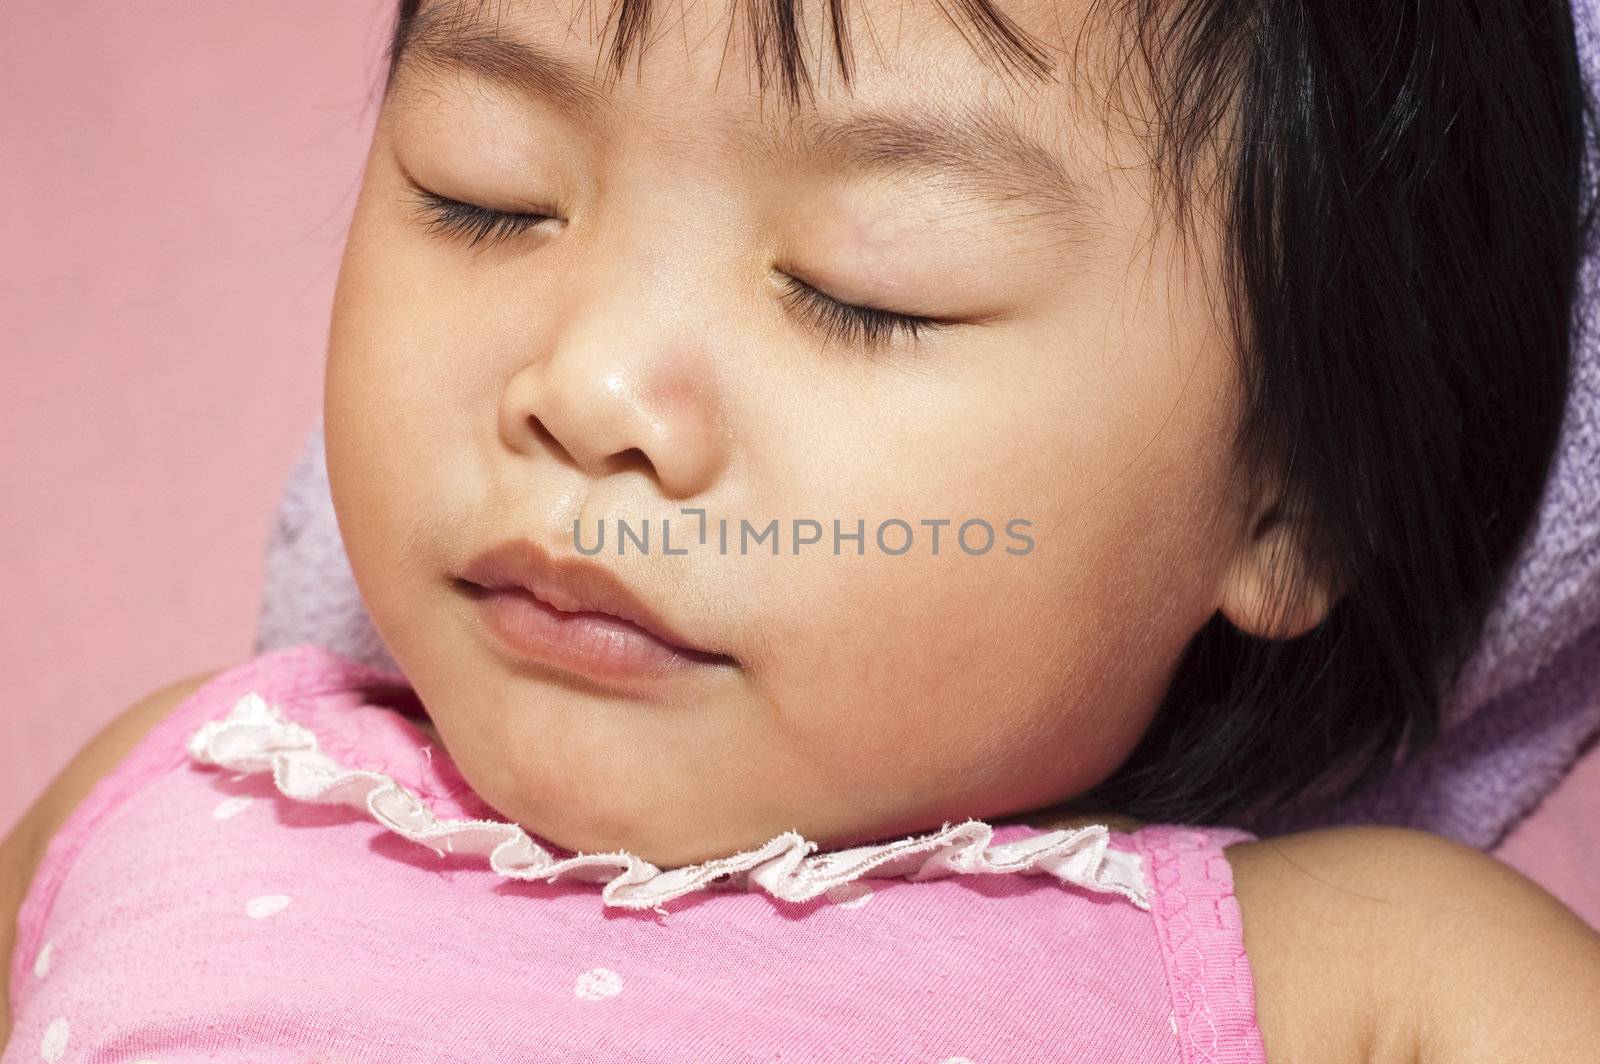 Sleeping child by szefei